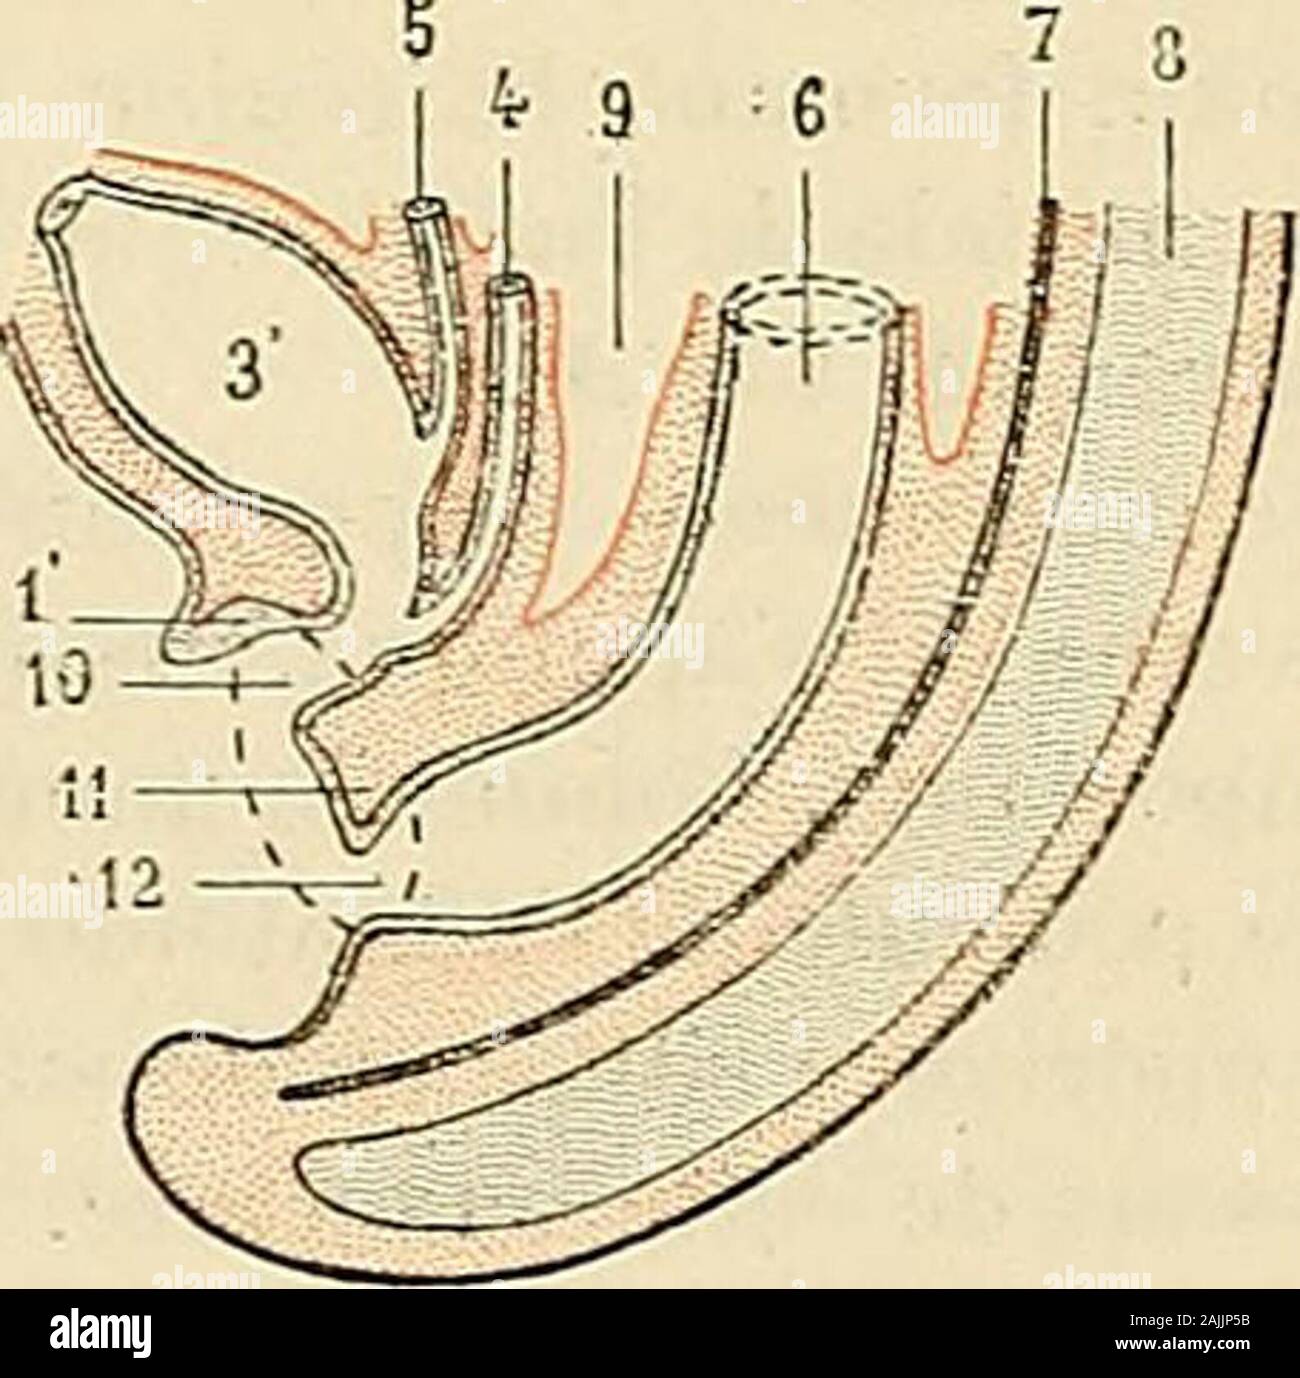 Traité d'anatomie humaine : anatomie descriptive, histologie, développement . Fig. 472. Développement du système uro-génital, coupe sagittale de lembryon {schématique). A et B, deux stades successifs. i. bouchon cloacal. — 1, lame urélhrale du même. — 2, cloaque intcrue. — 3, allantoide. — 3, vessie. — 4, canalde WolCr. — 5, uretère. — 6, intestin. — 7, qordc dorsale. — S, moelle. — 9, cavité péritonéale. — 10, sinus uro-génilal.— li, périnée. — 12, auus. au pédicule de lallantoïde, lautre postérieur qui est en rapport avec lintestin. Cecloisonnement peut se suivre aisément sur les figures 472 Stock Photo